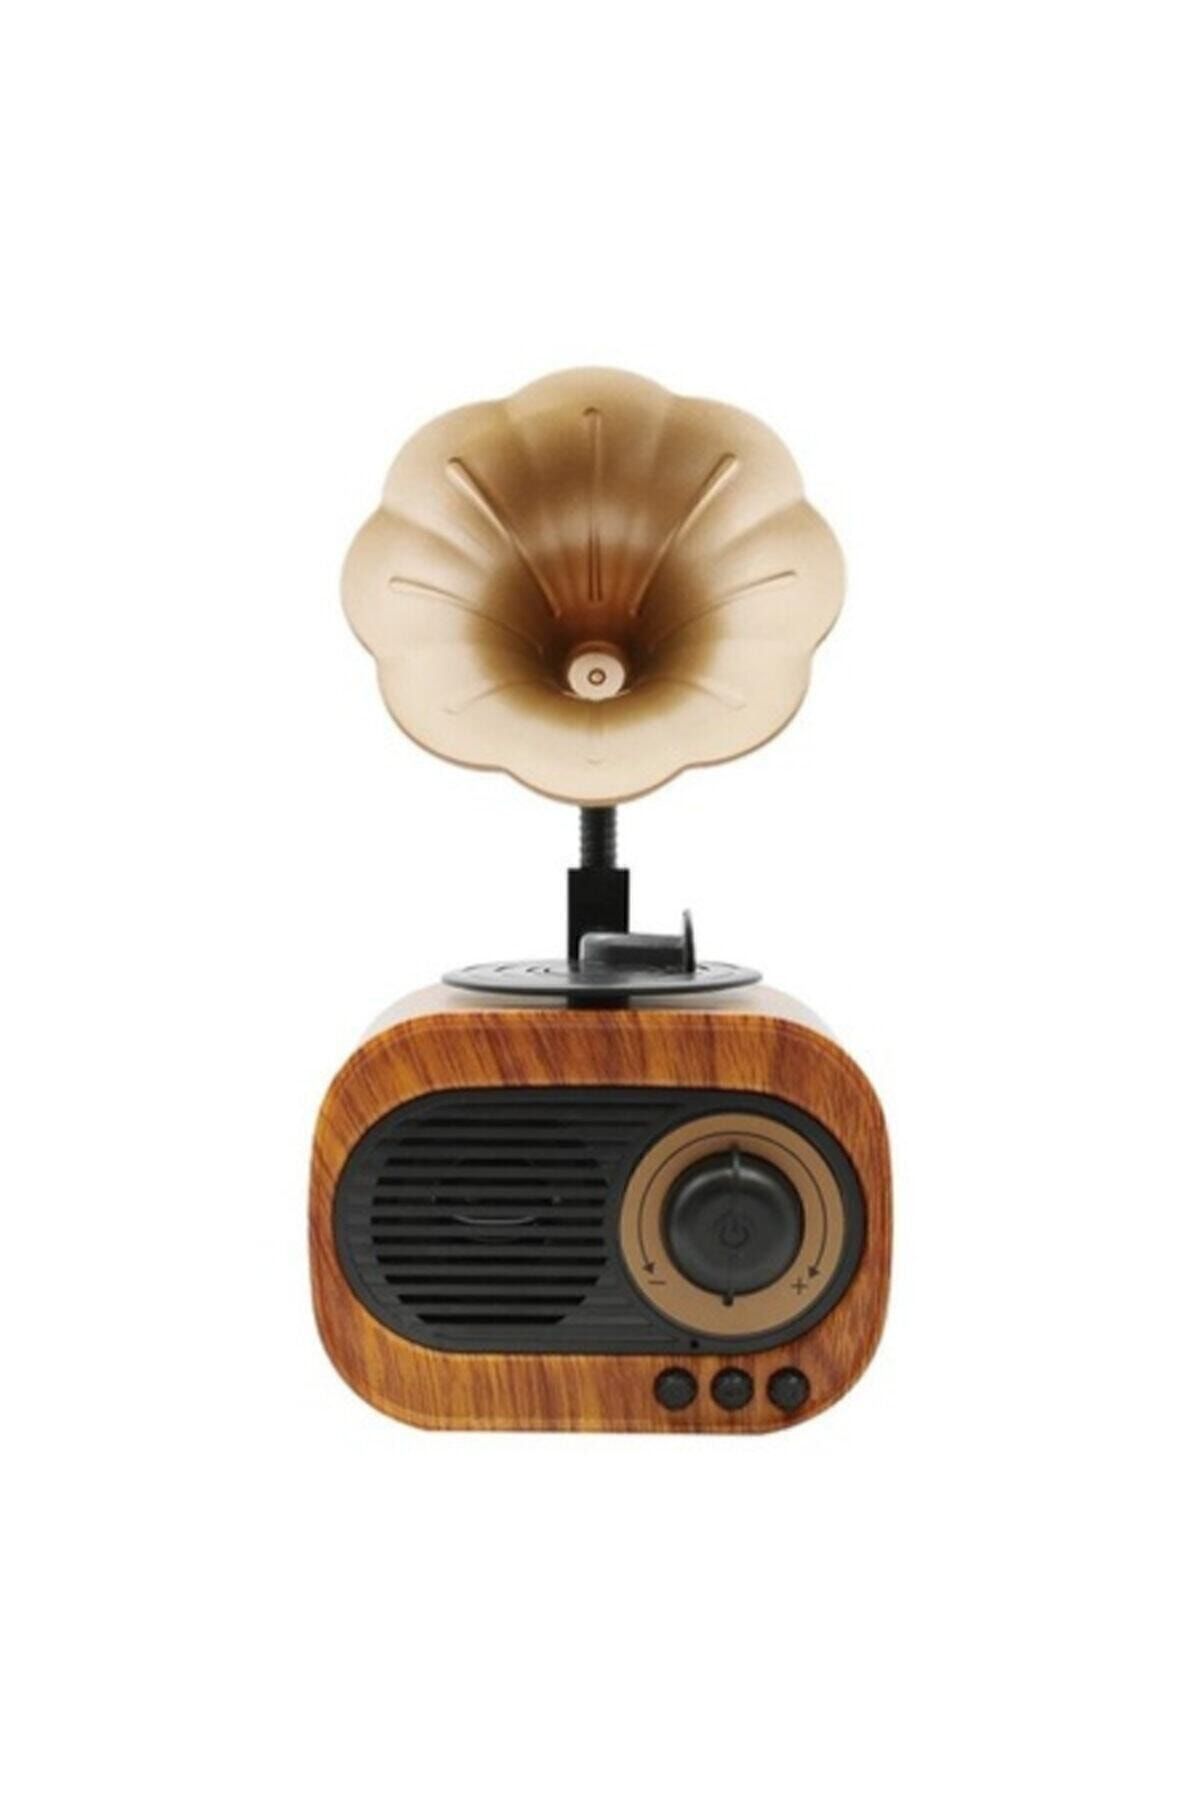 OWWOTECH B5 Nostaljik Mini Radyo Gramofon Bluetooth/radyo/usb/sd Speaker